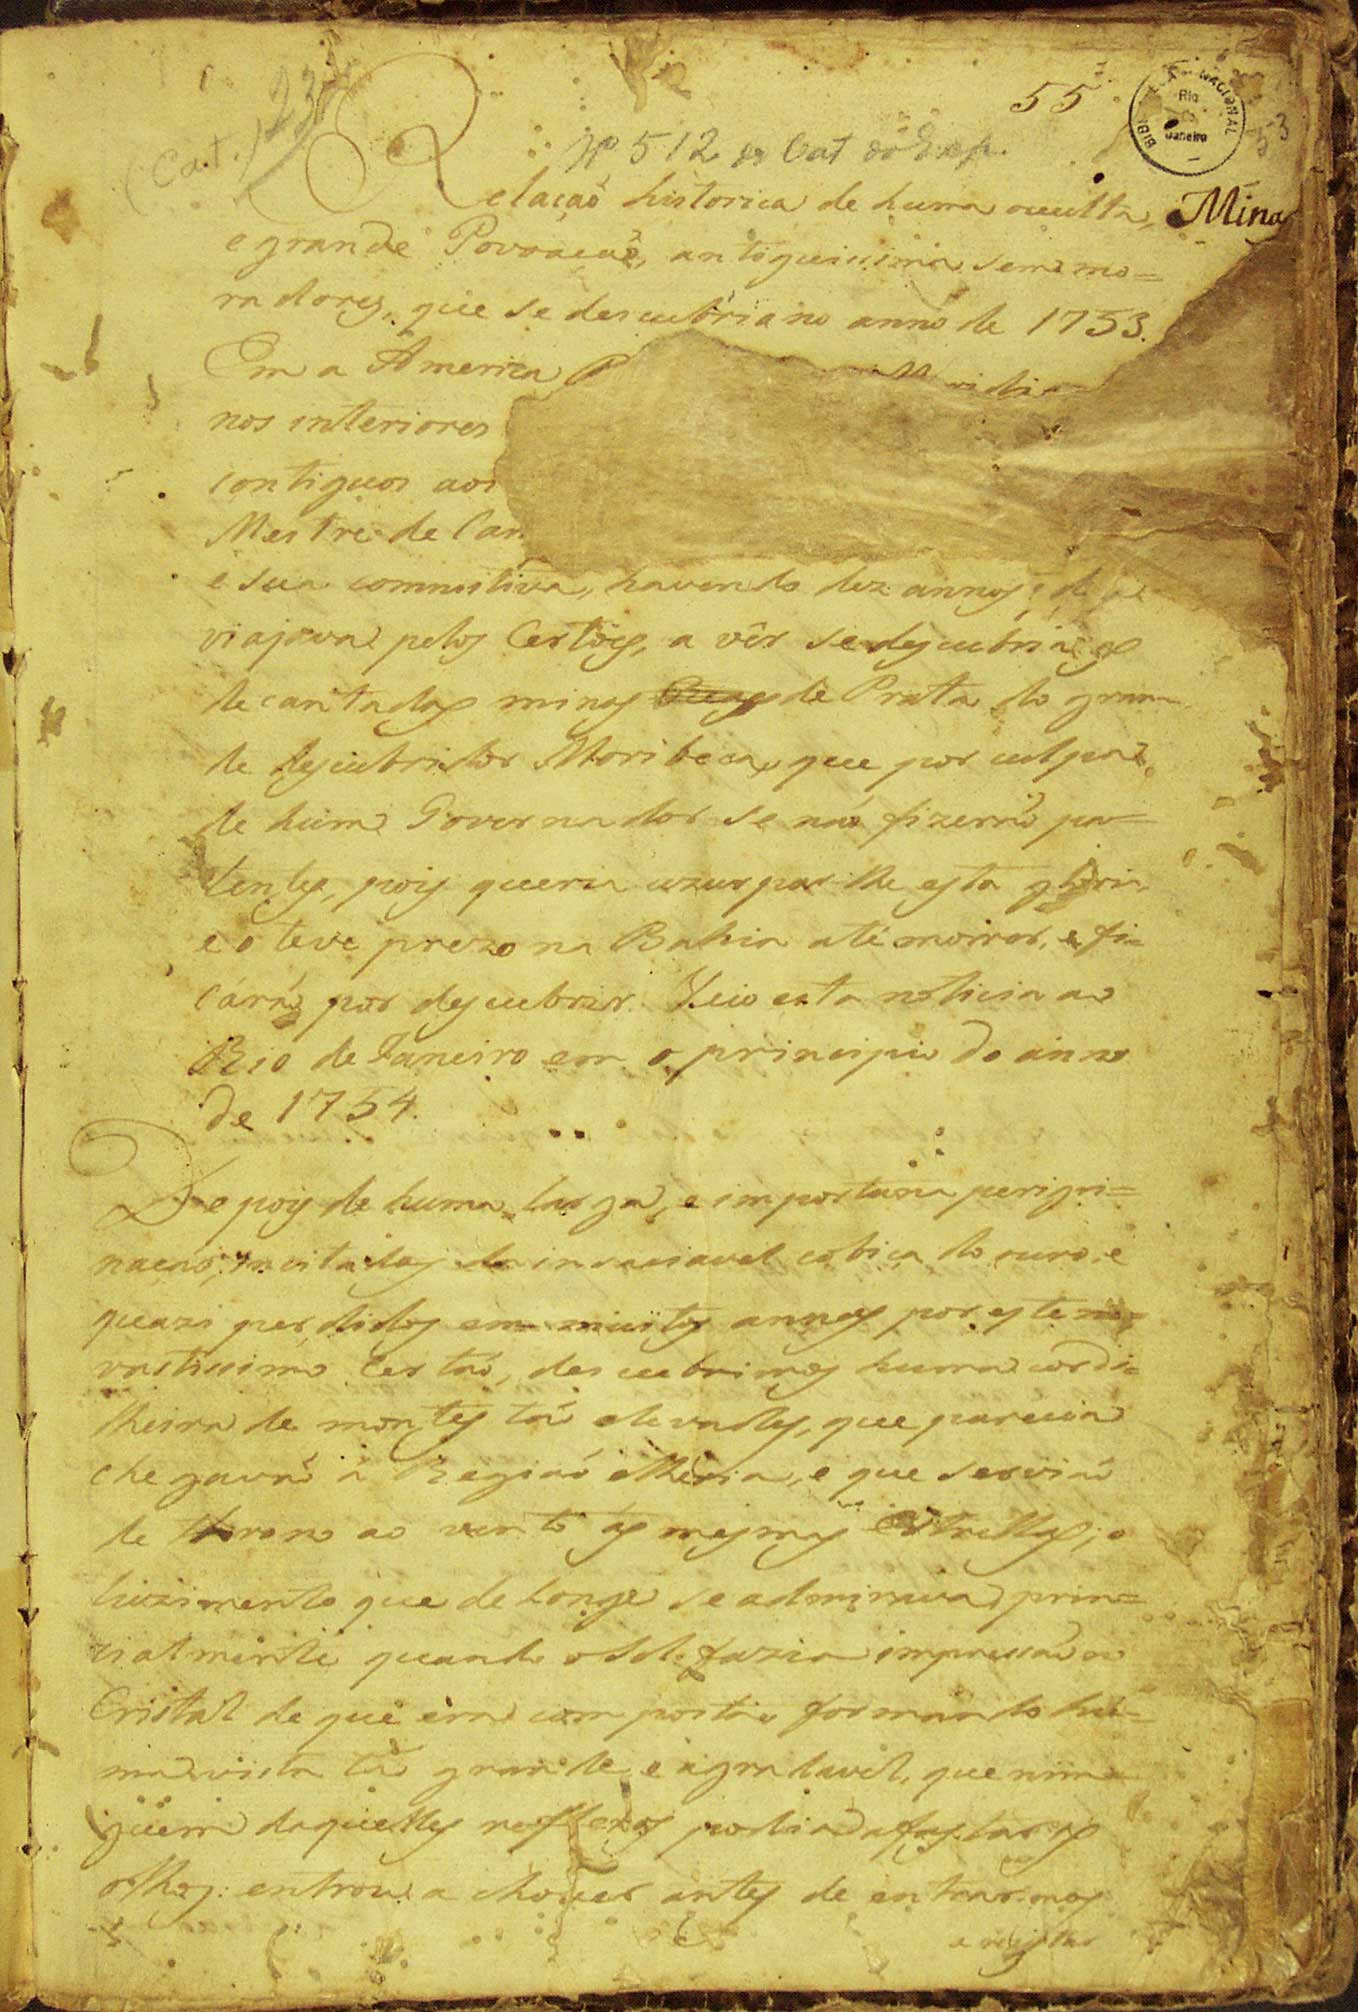 Página 1 do Manuscrito 512, publicado em 1753 (autor desconhecido).